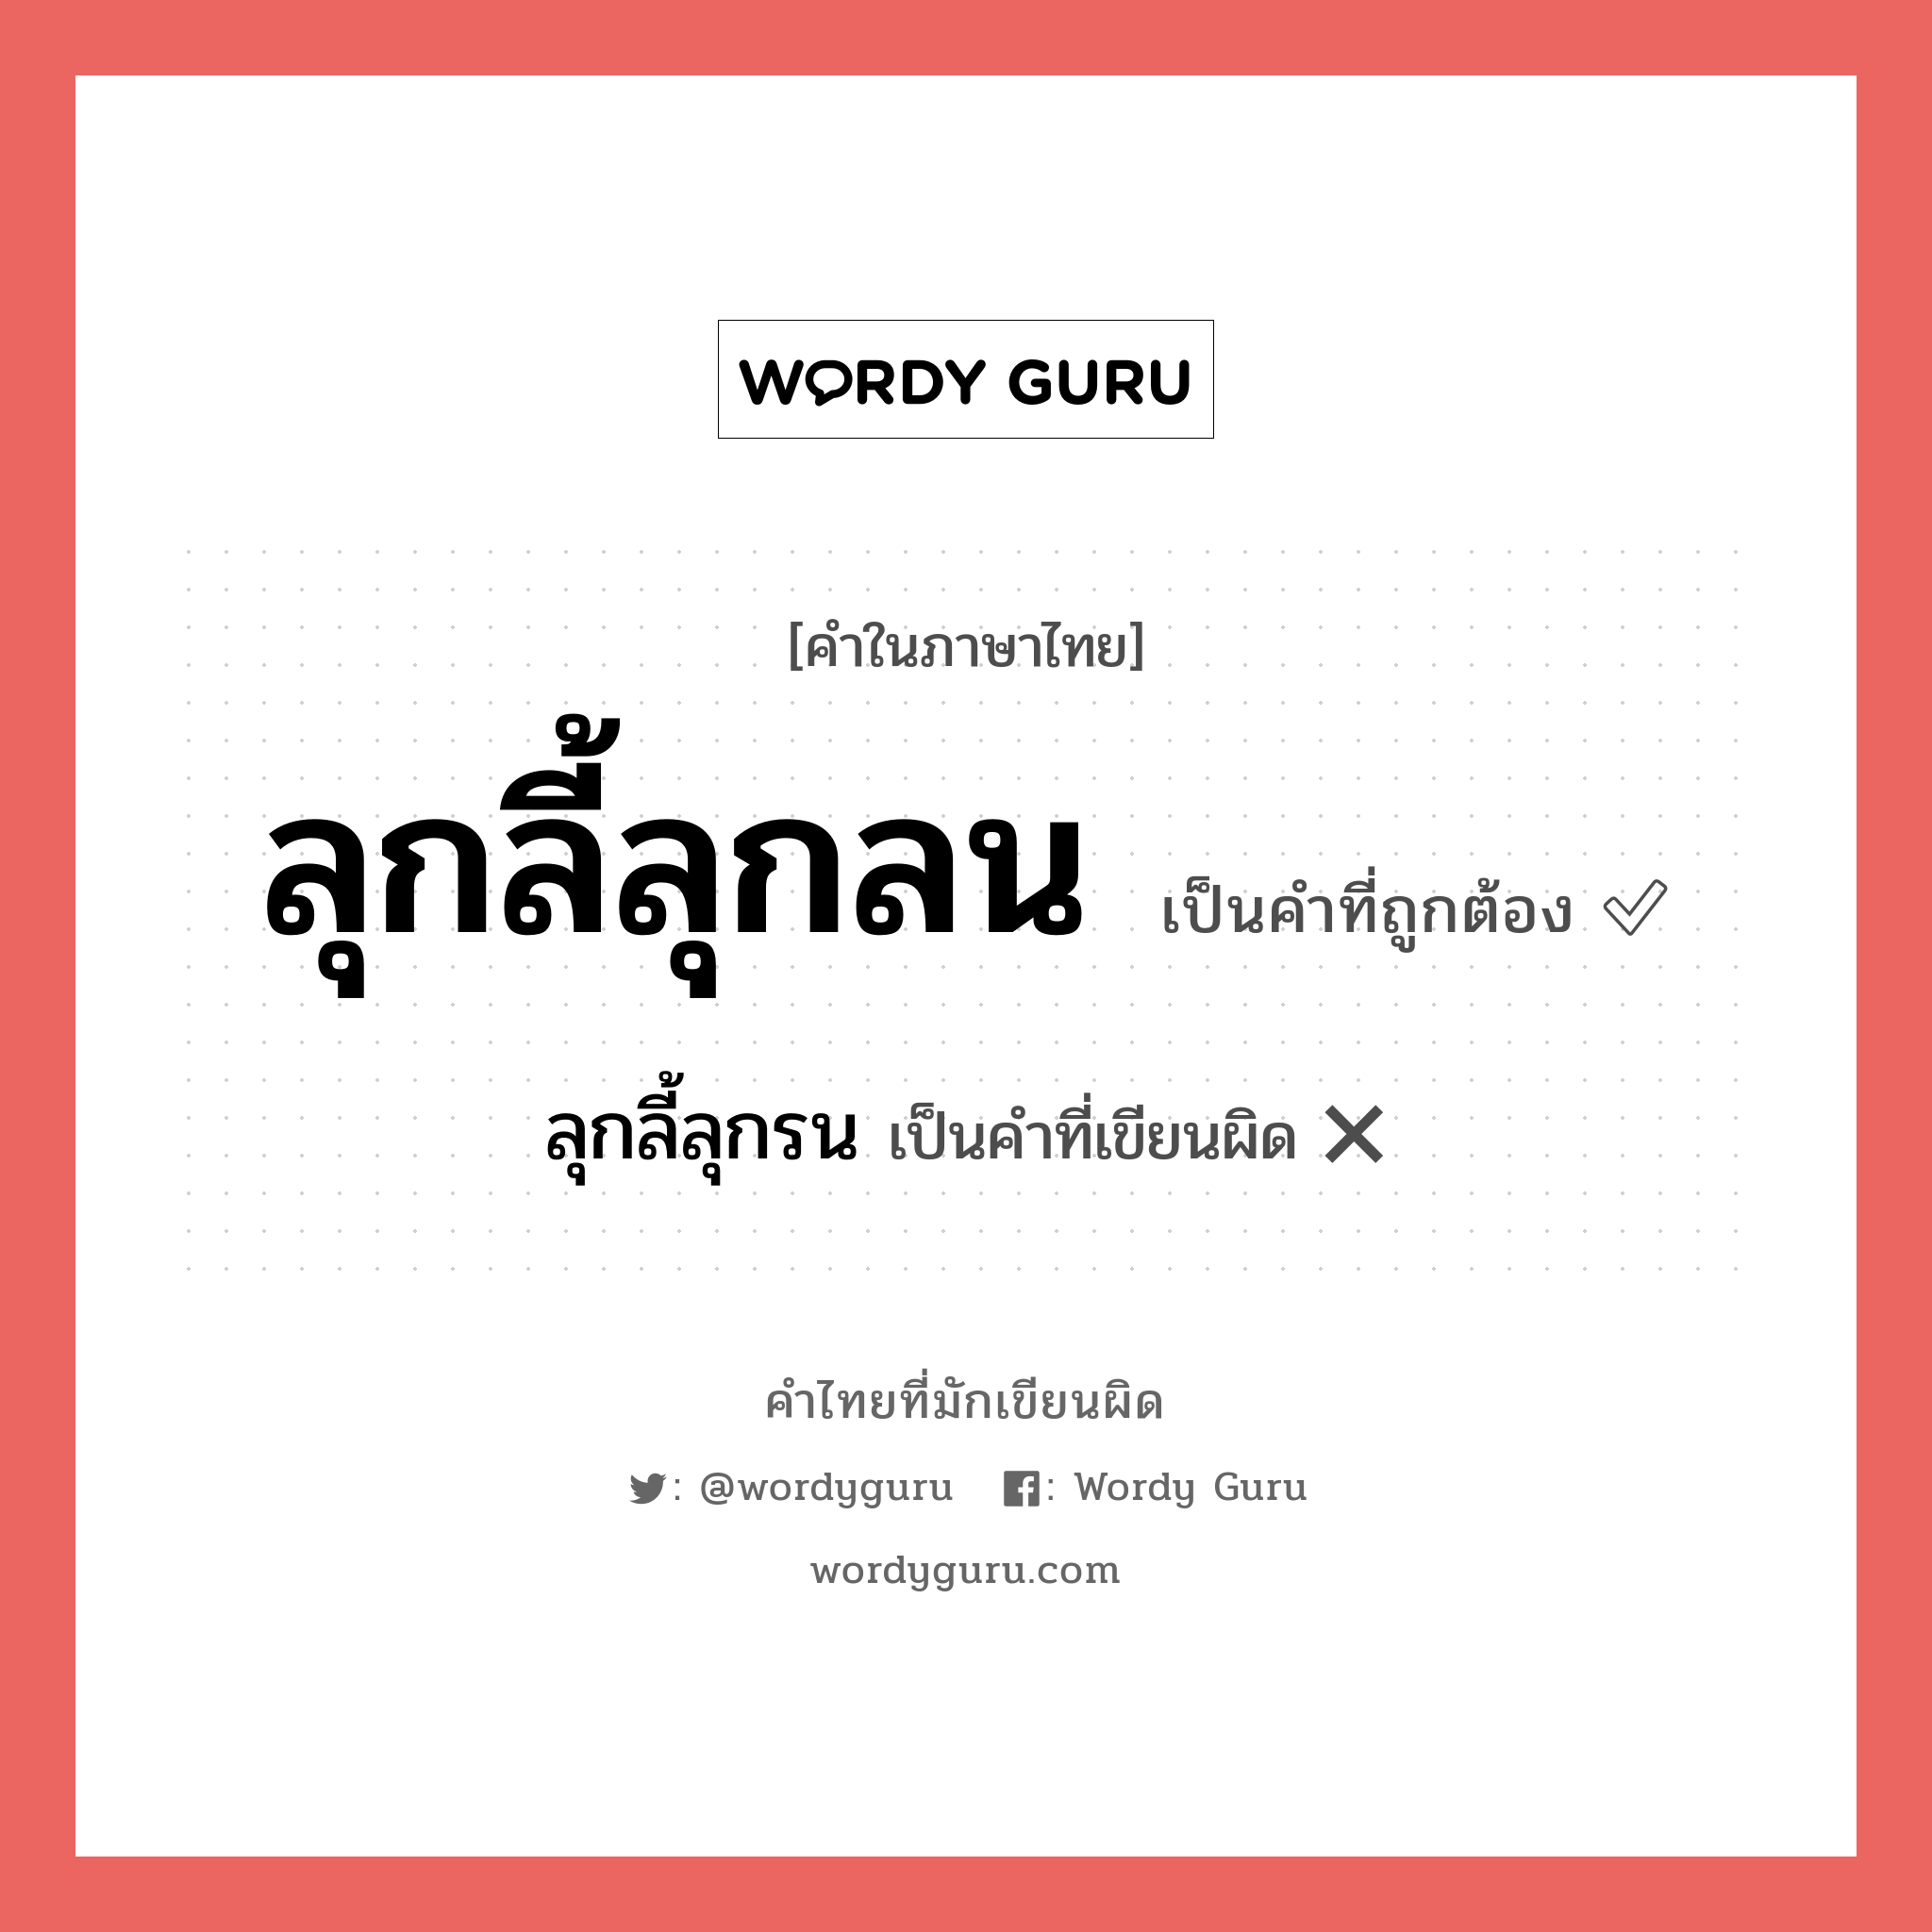 ลุกลี้ลุกลน หรือ ลุกลี้ลุกรน คำไหนเขียนถูก?, คำในภาษาไทยที่มักเขียนผิด ลุกลี้ลุกลน คำที่ผิด ❌ ลุกลี้ลุกรน